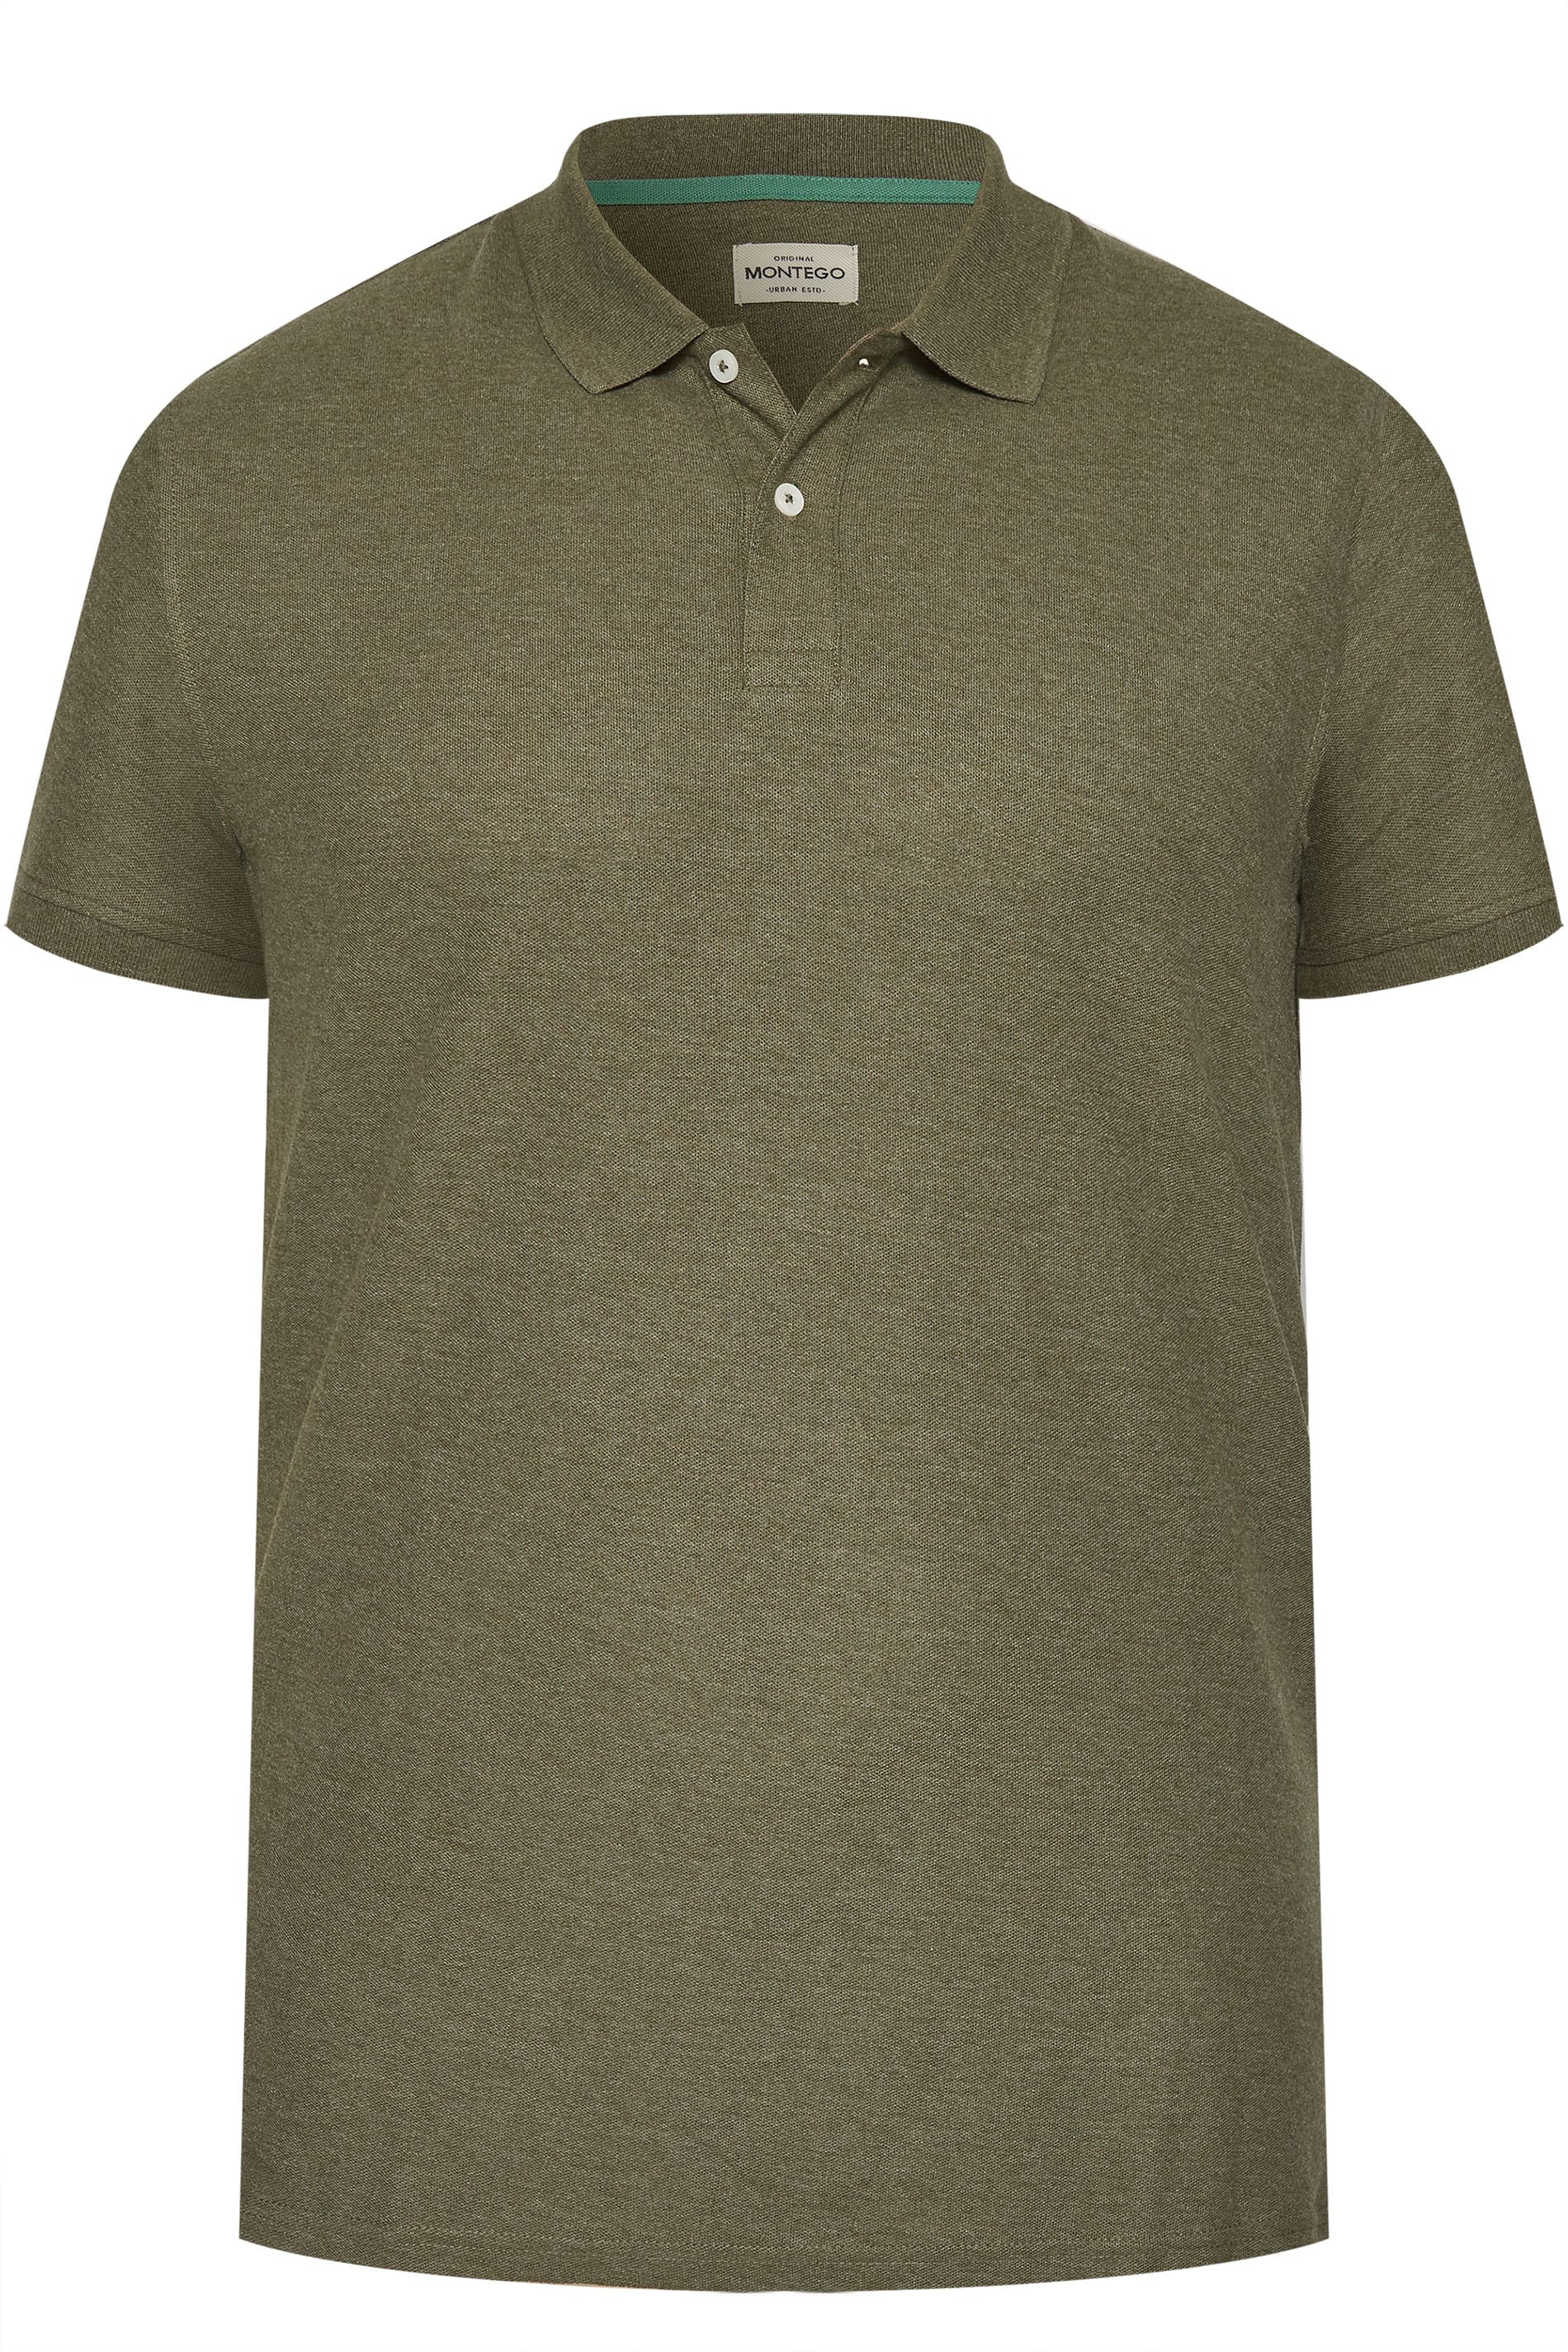 MONTEGO Khaki Polo Shirt | Sizes Medium - 8XL | BadRhino